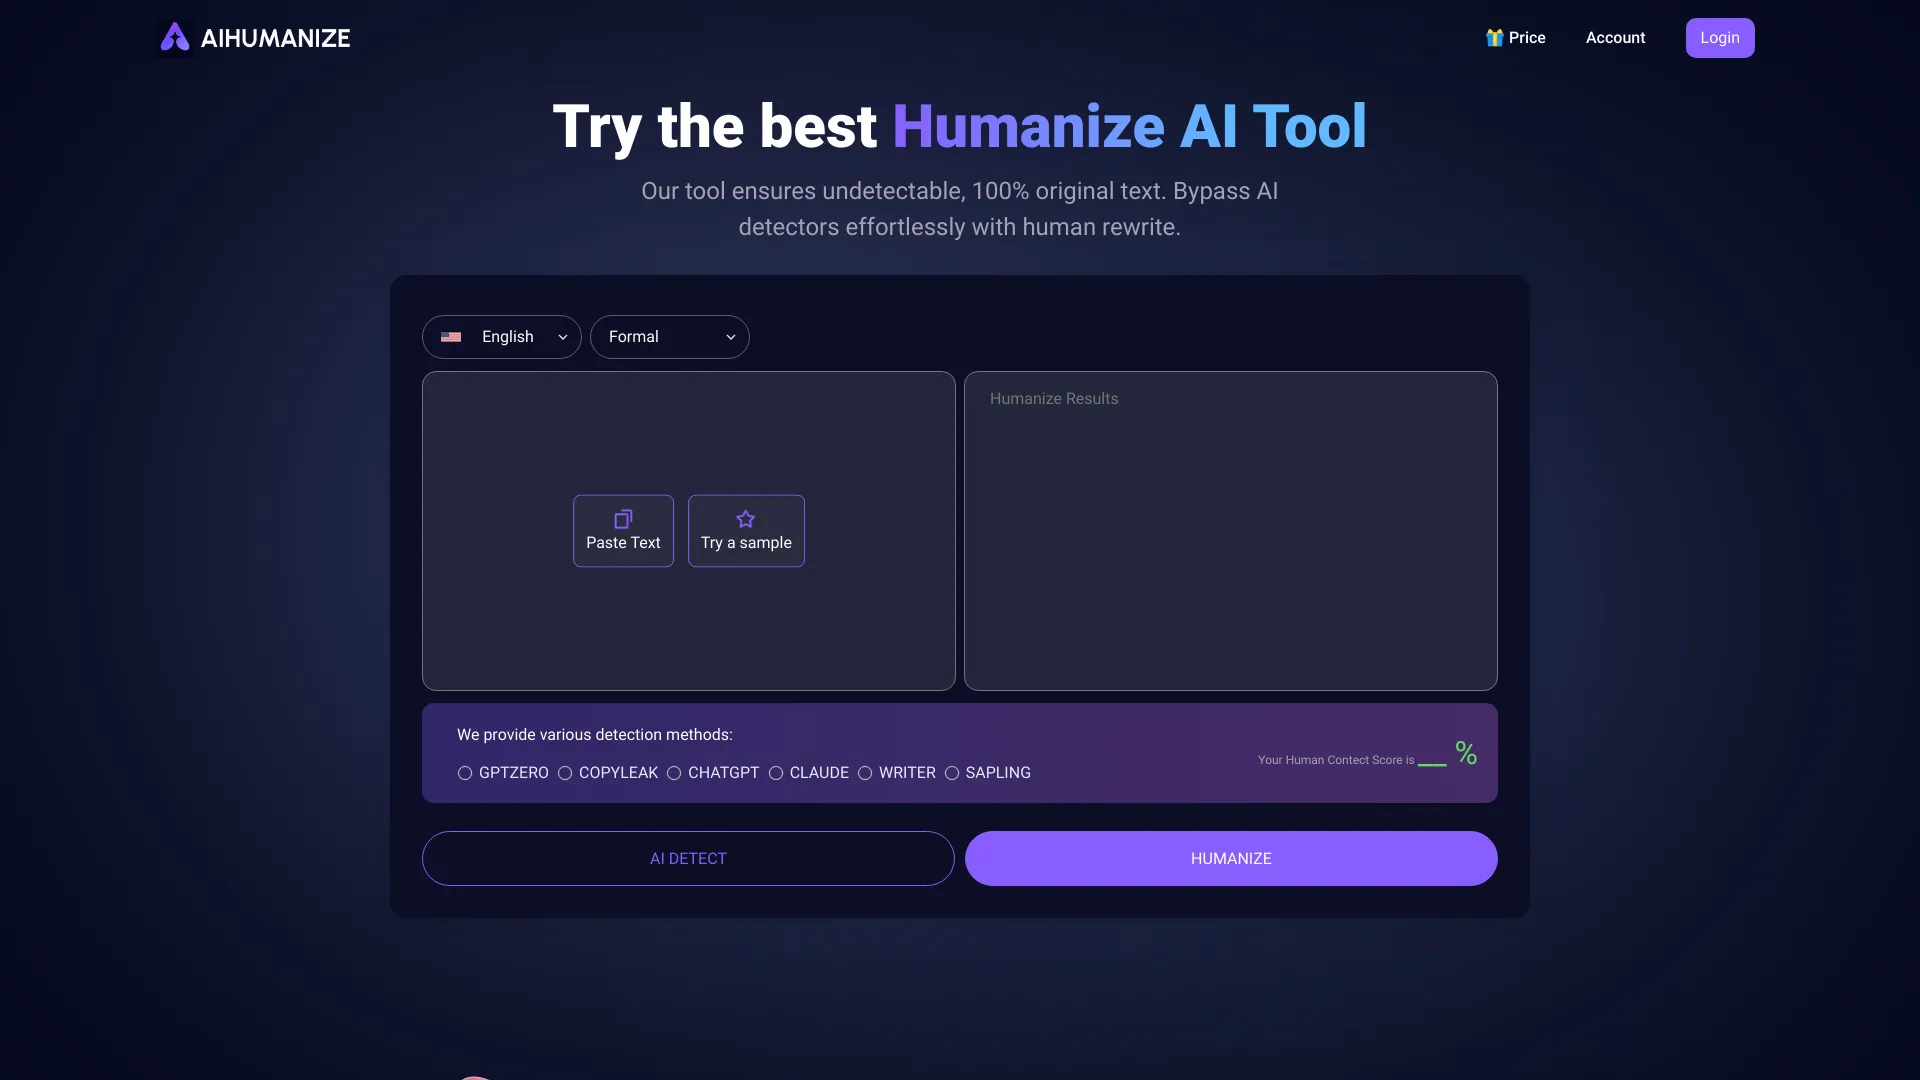 
AI Humanize
